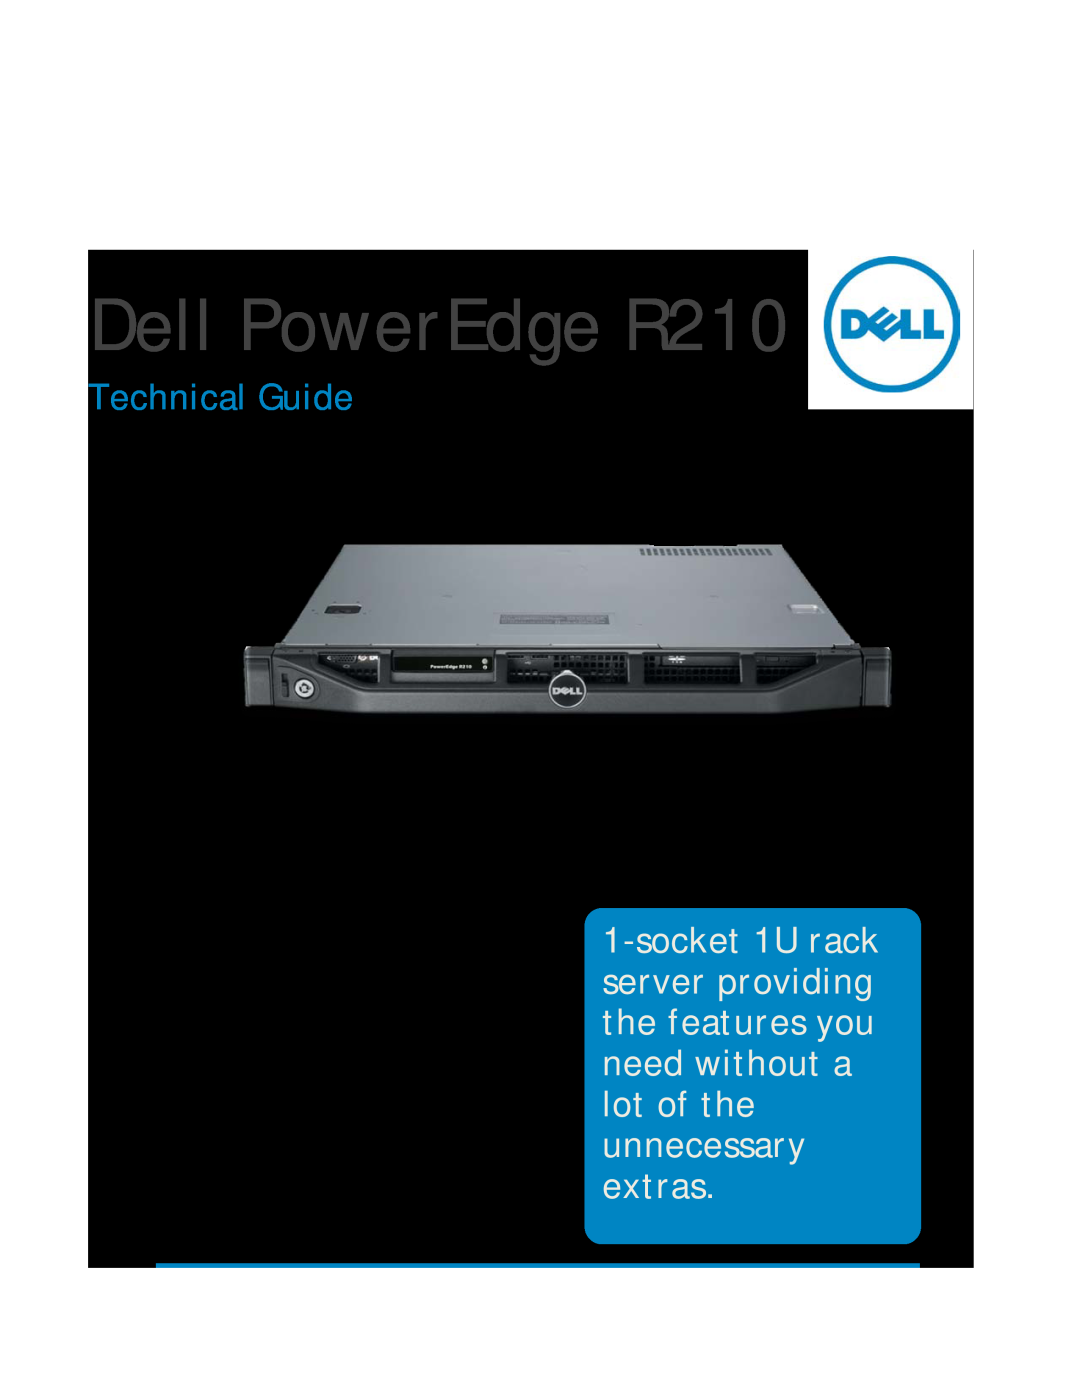 Dell manual Dell PowerEdge R210, Technical Guide 